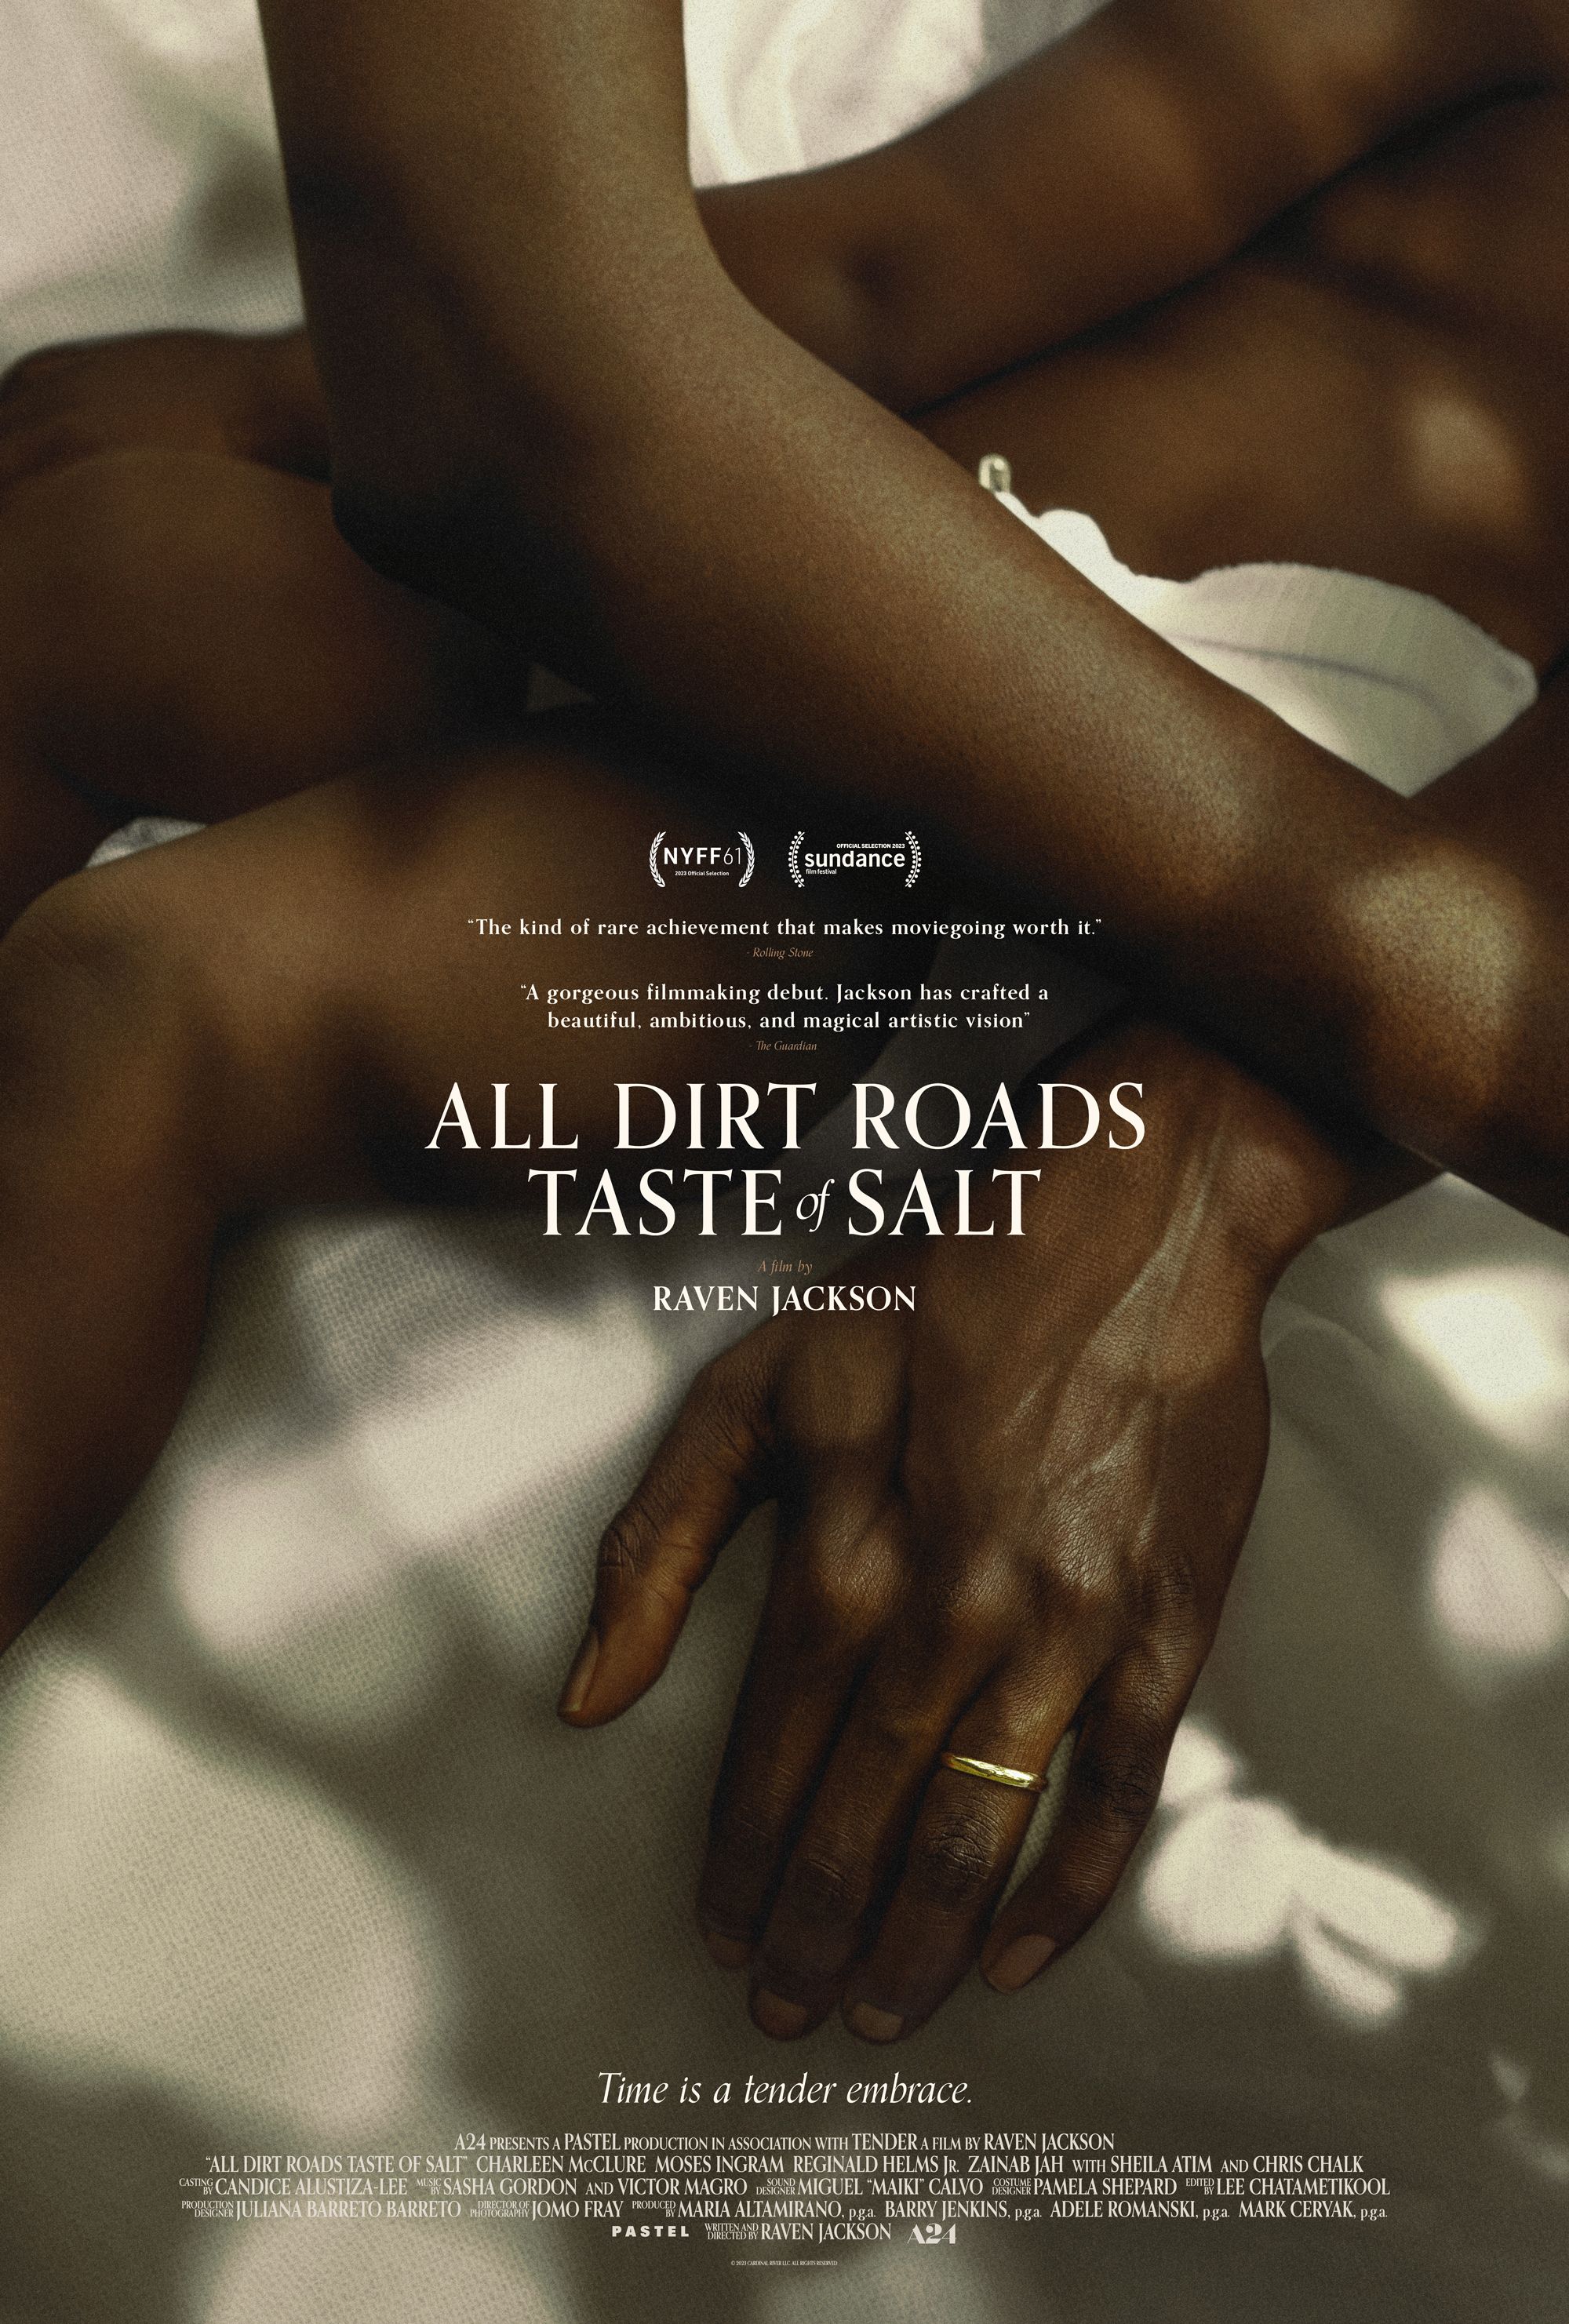 A poster for Raven Jackson's All Dirt Roads Taste of Salt